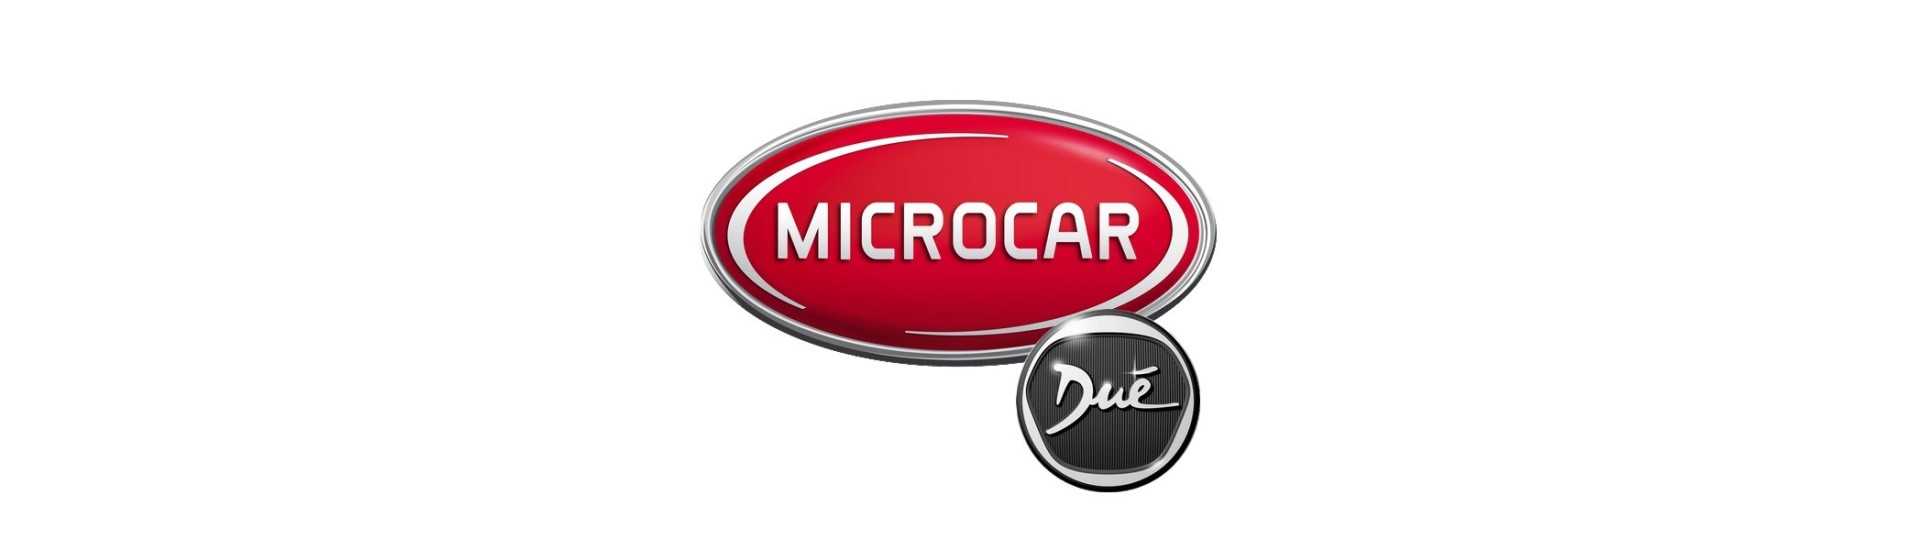 Cache commodo zum besten Preis für Auto ohne Genehmigung Microcar Dué